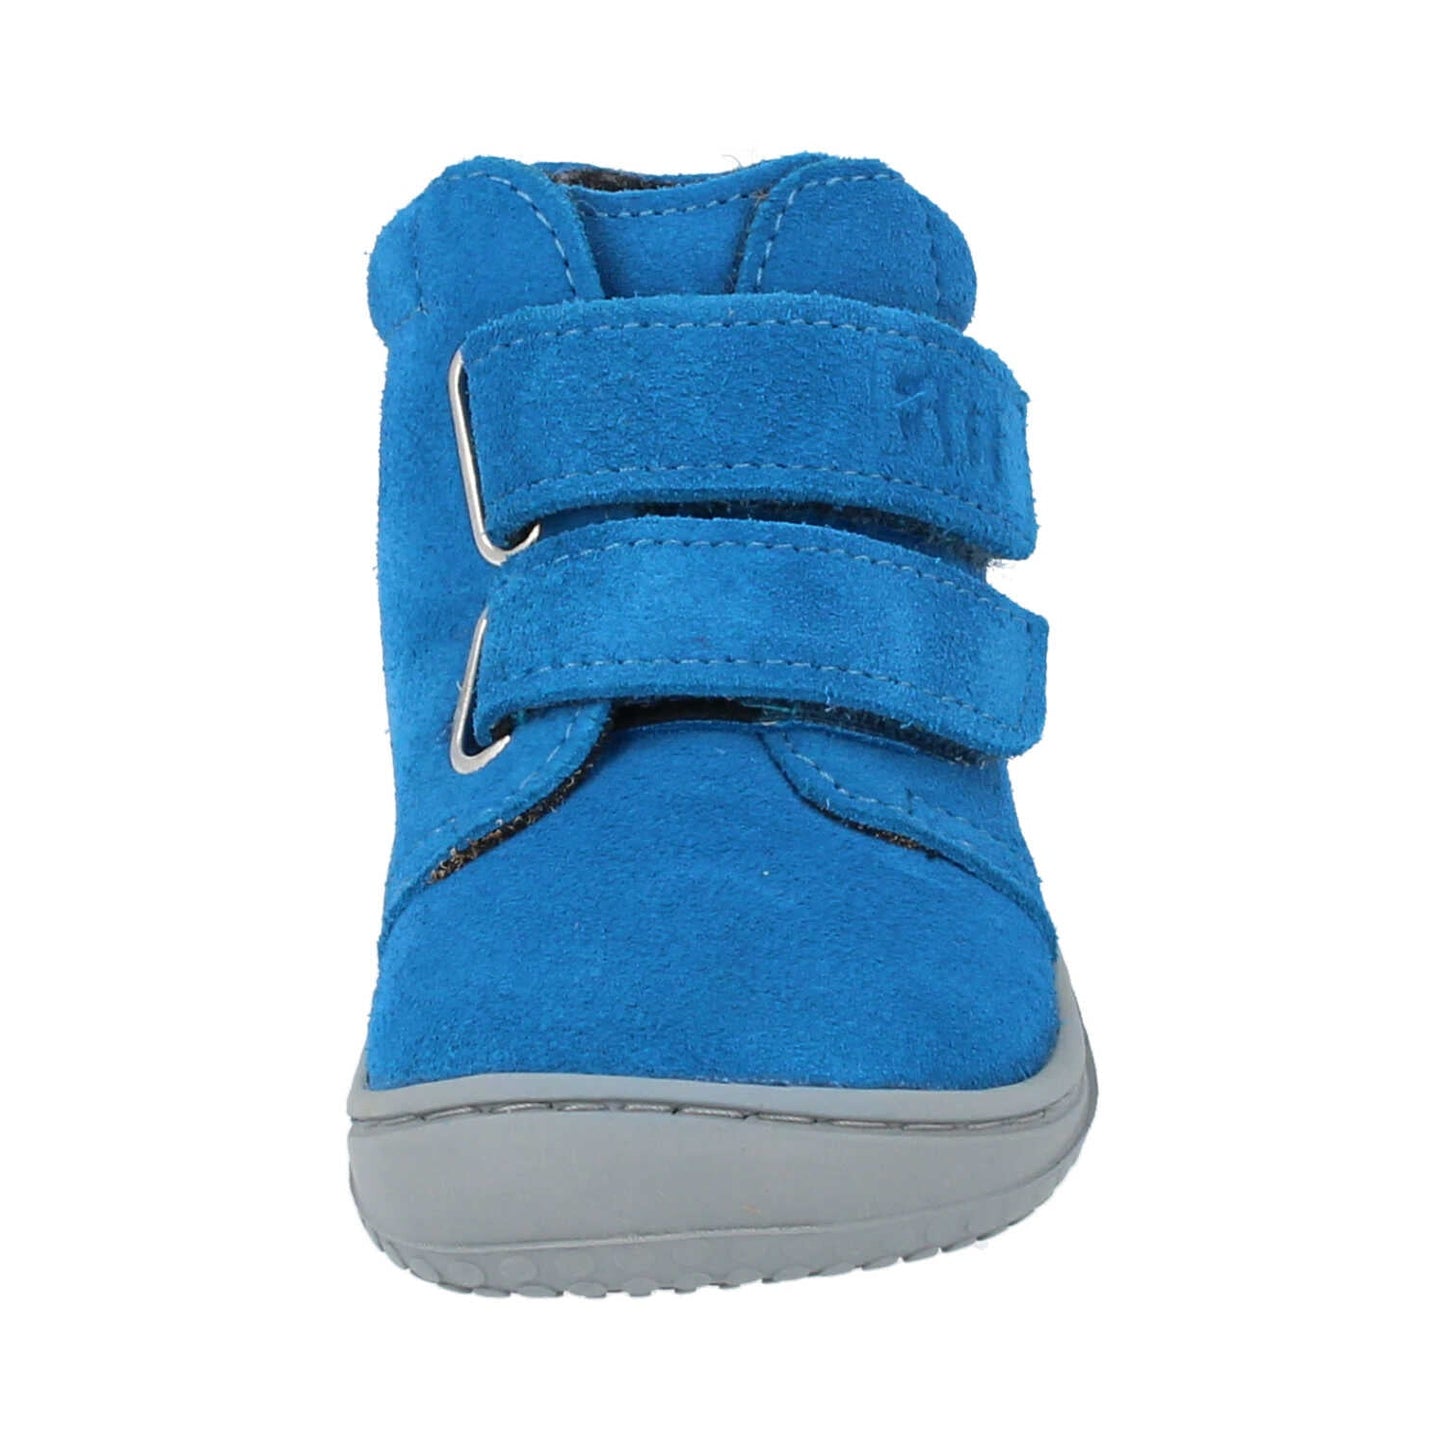 Filii Chameleon "Medium" barfods støvle til børn i farven electric blue fleece, forfra